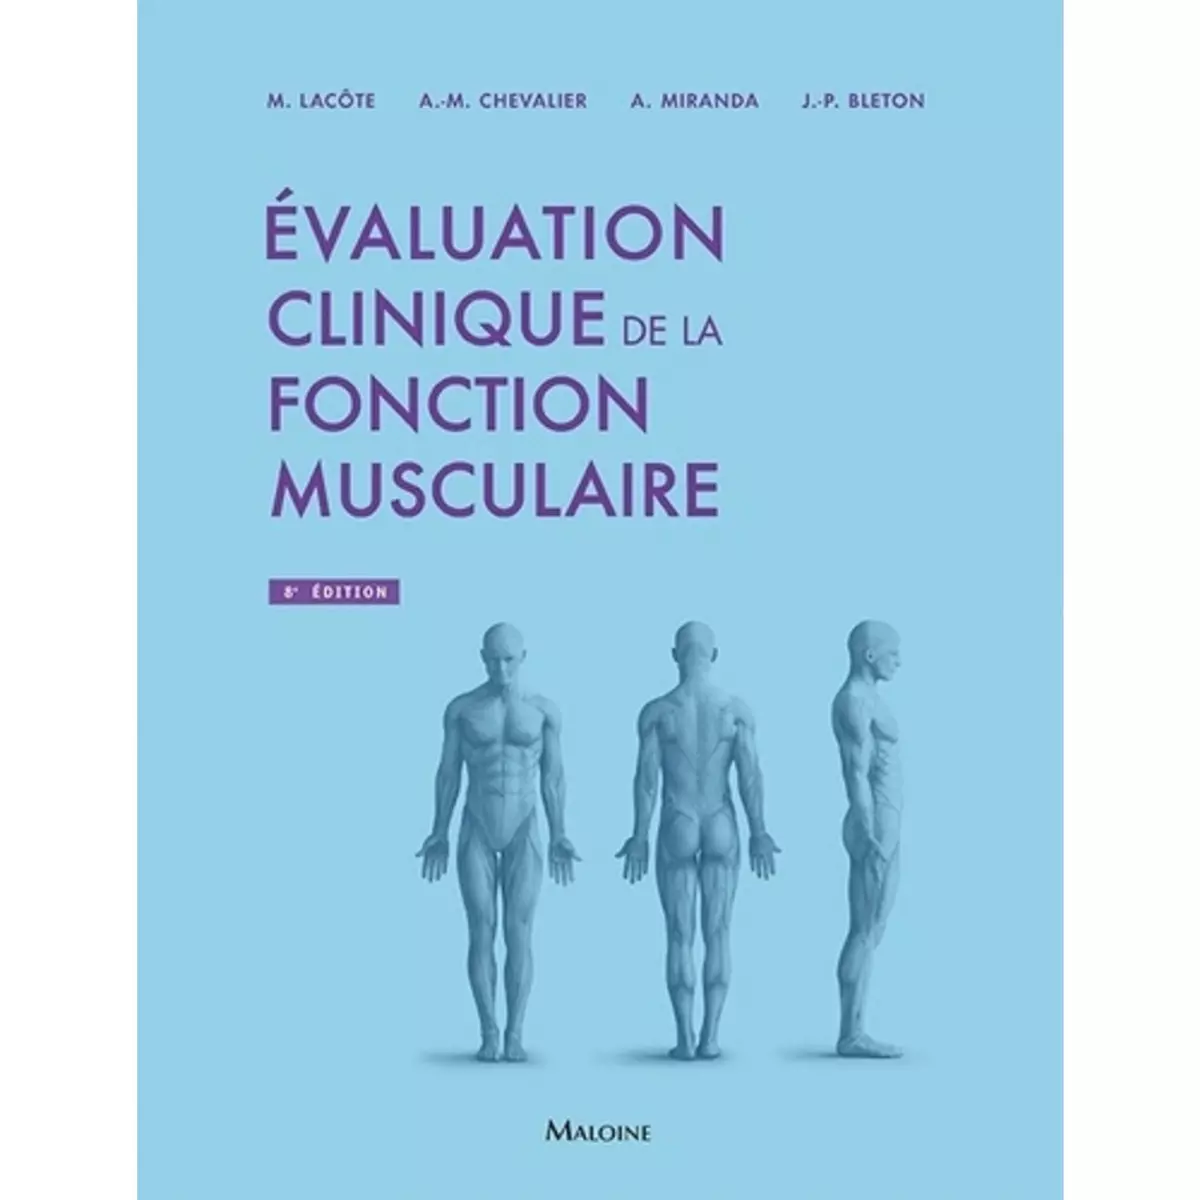  EVALUATION CLINIQUE DE LA FONCTION MUSCULAIRE. 8E EDITION, Lacôte Michèle